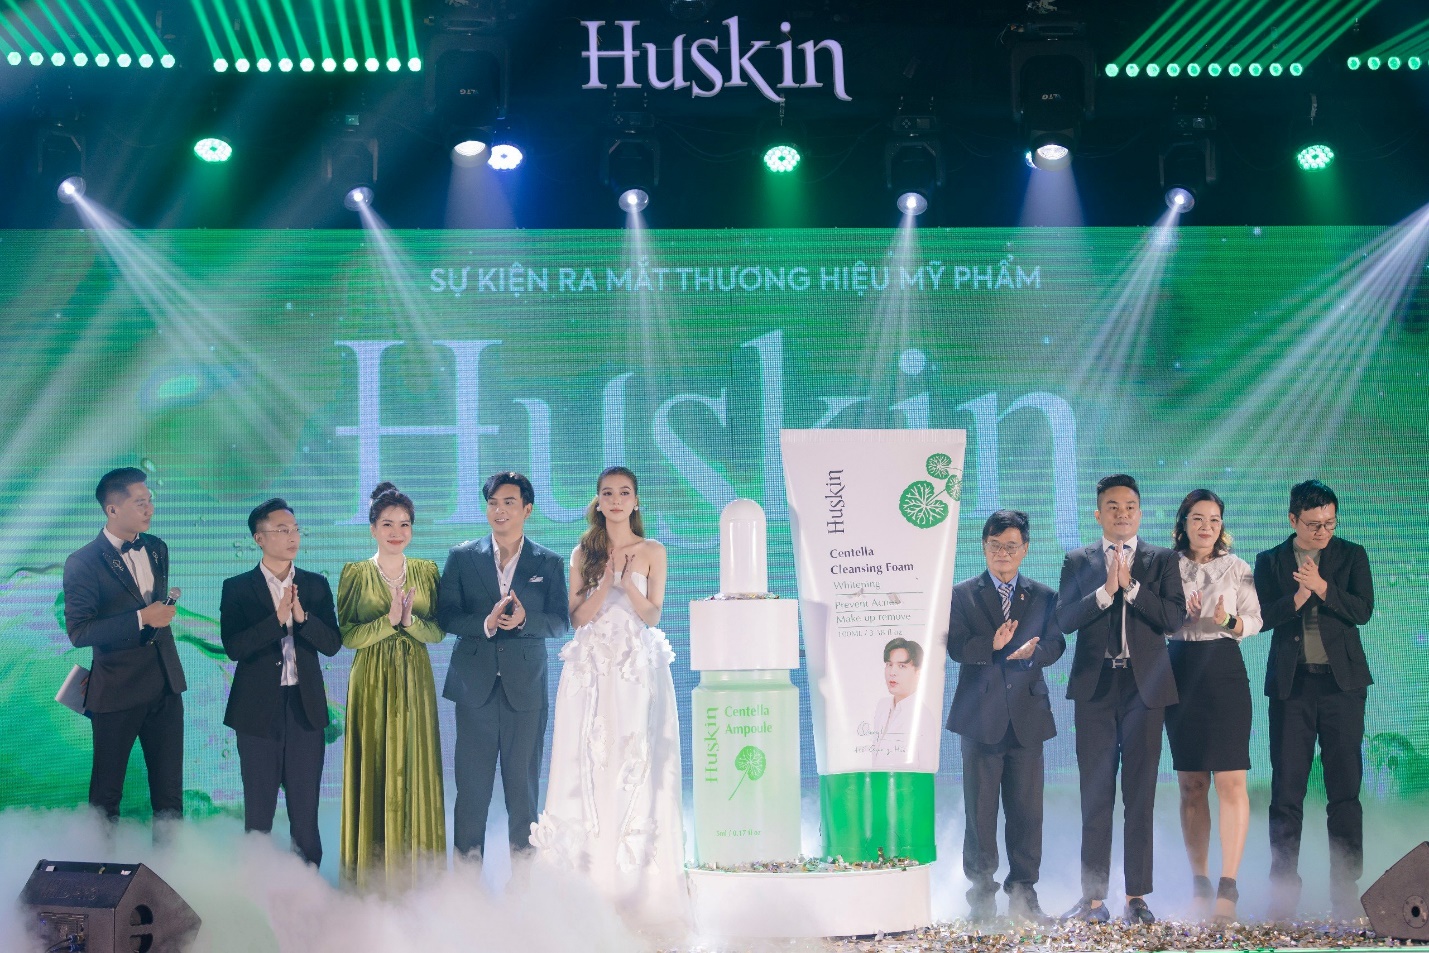 Vợ chồng Hồ Quang Hiếu ra mắt thương hiệu mỹ phẩm Huskin - Ảnh 2.